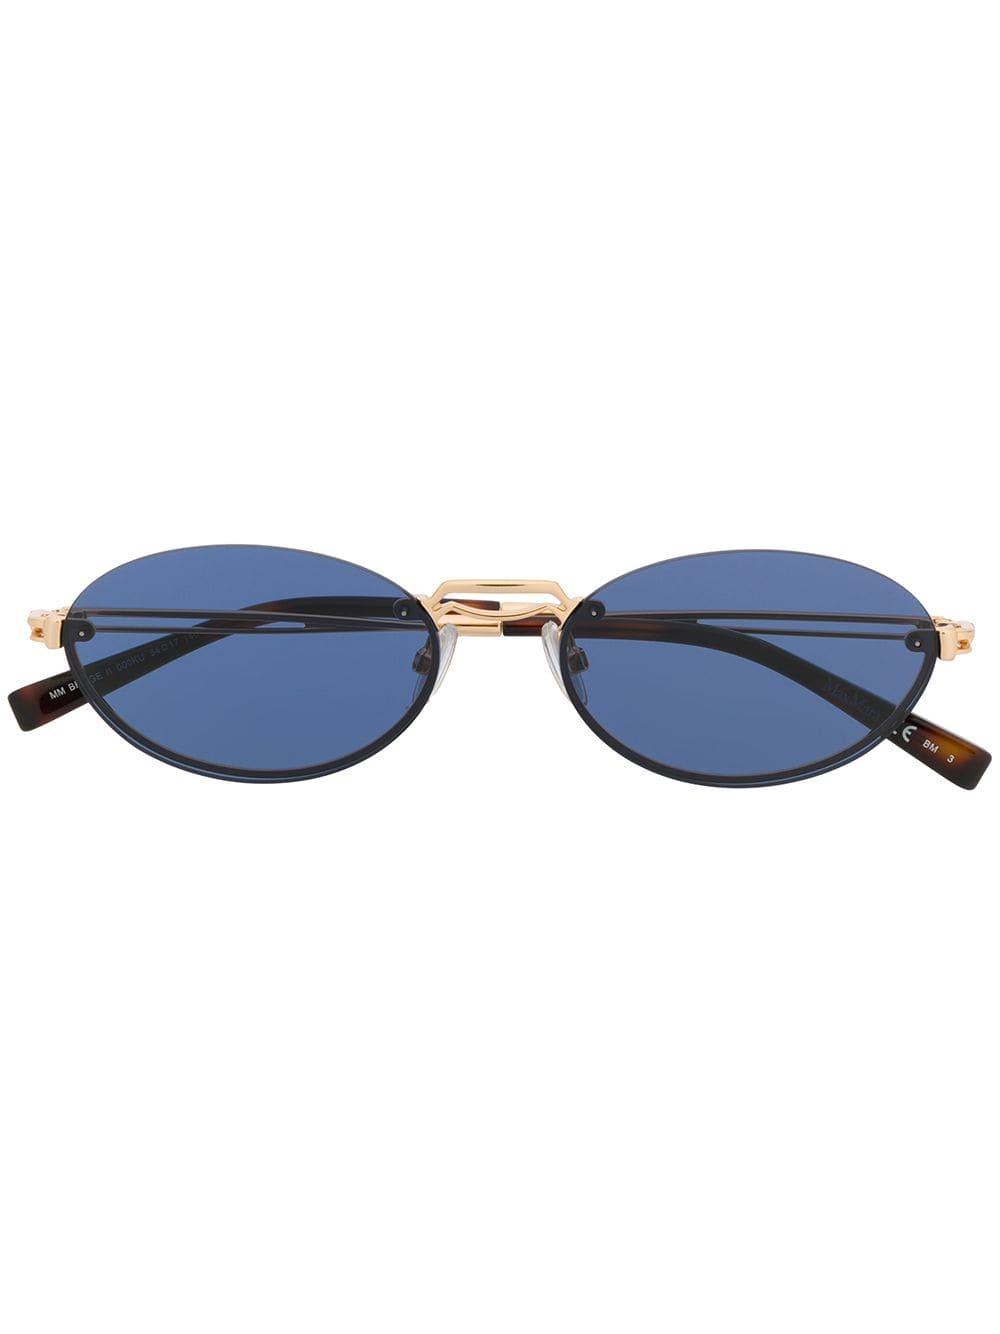 Max Mara Slim Oval Sunglasses in Metallic | Lyst